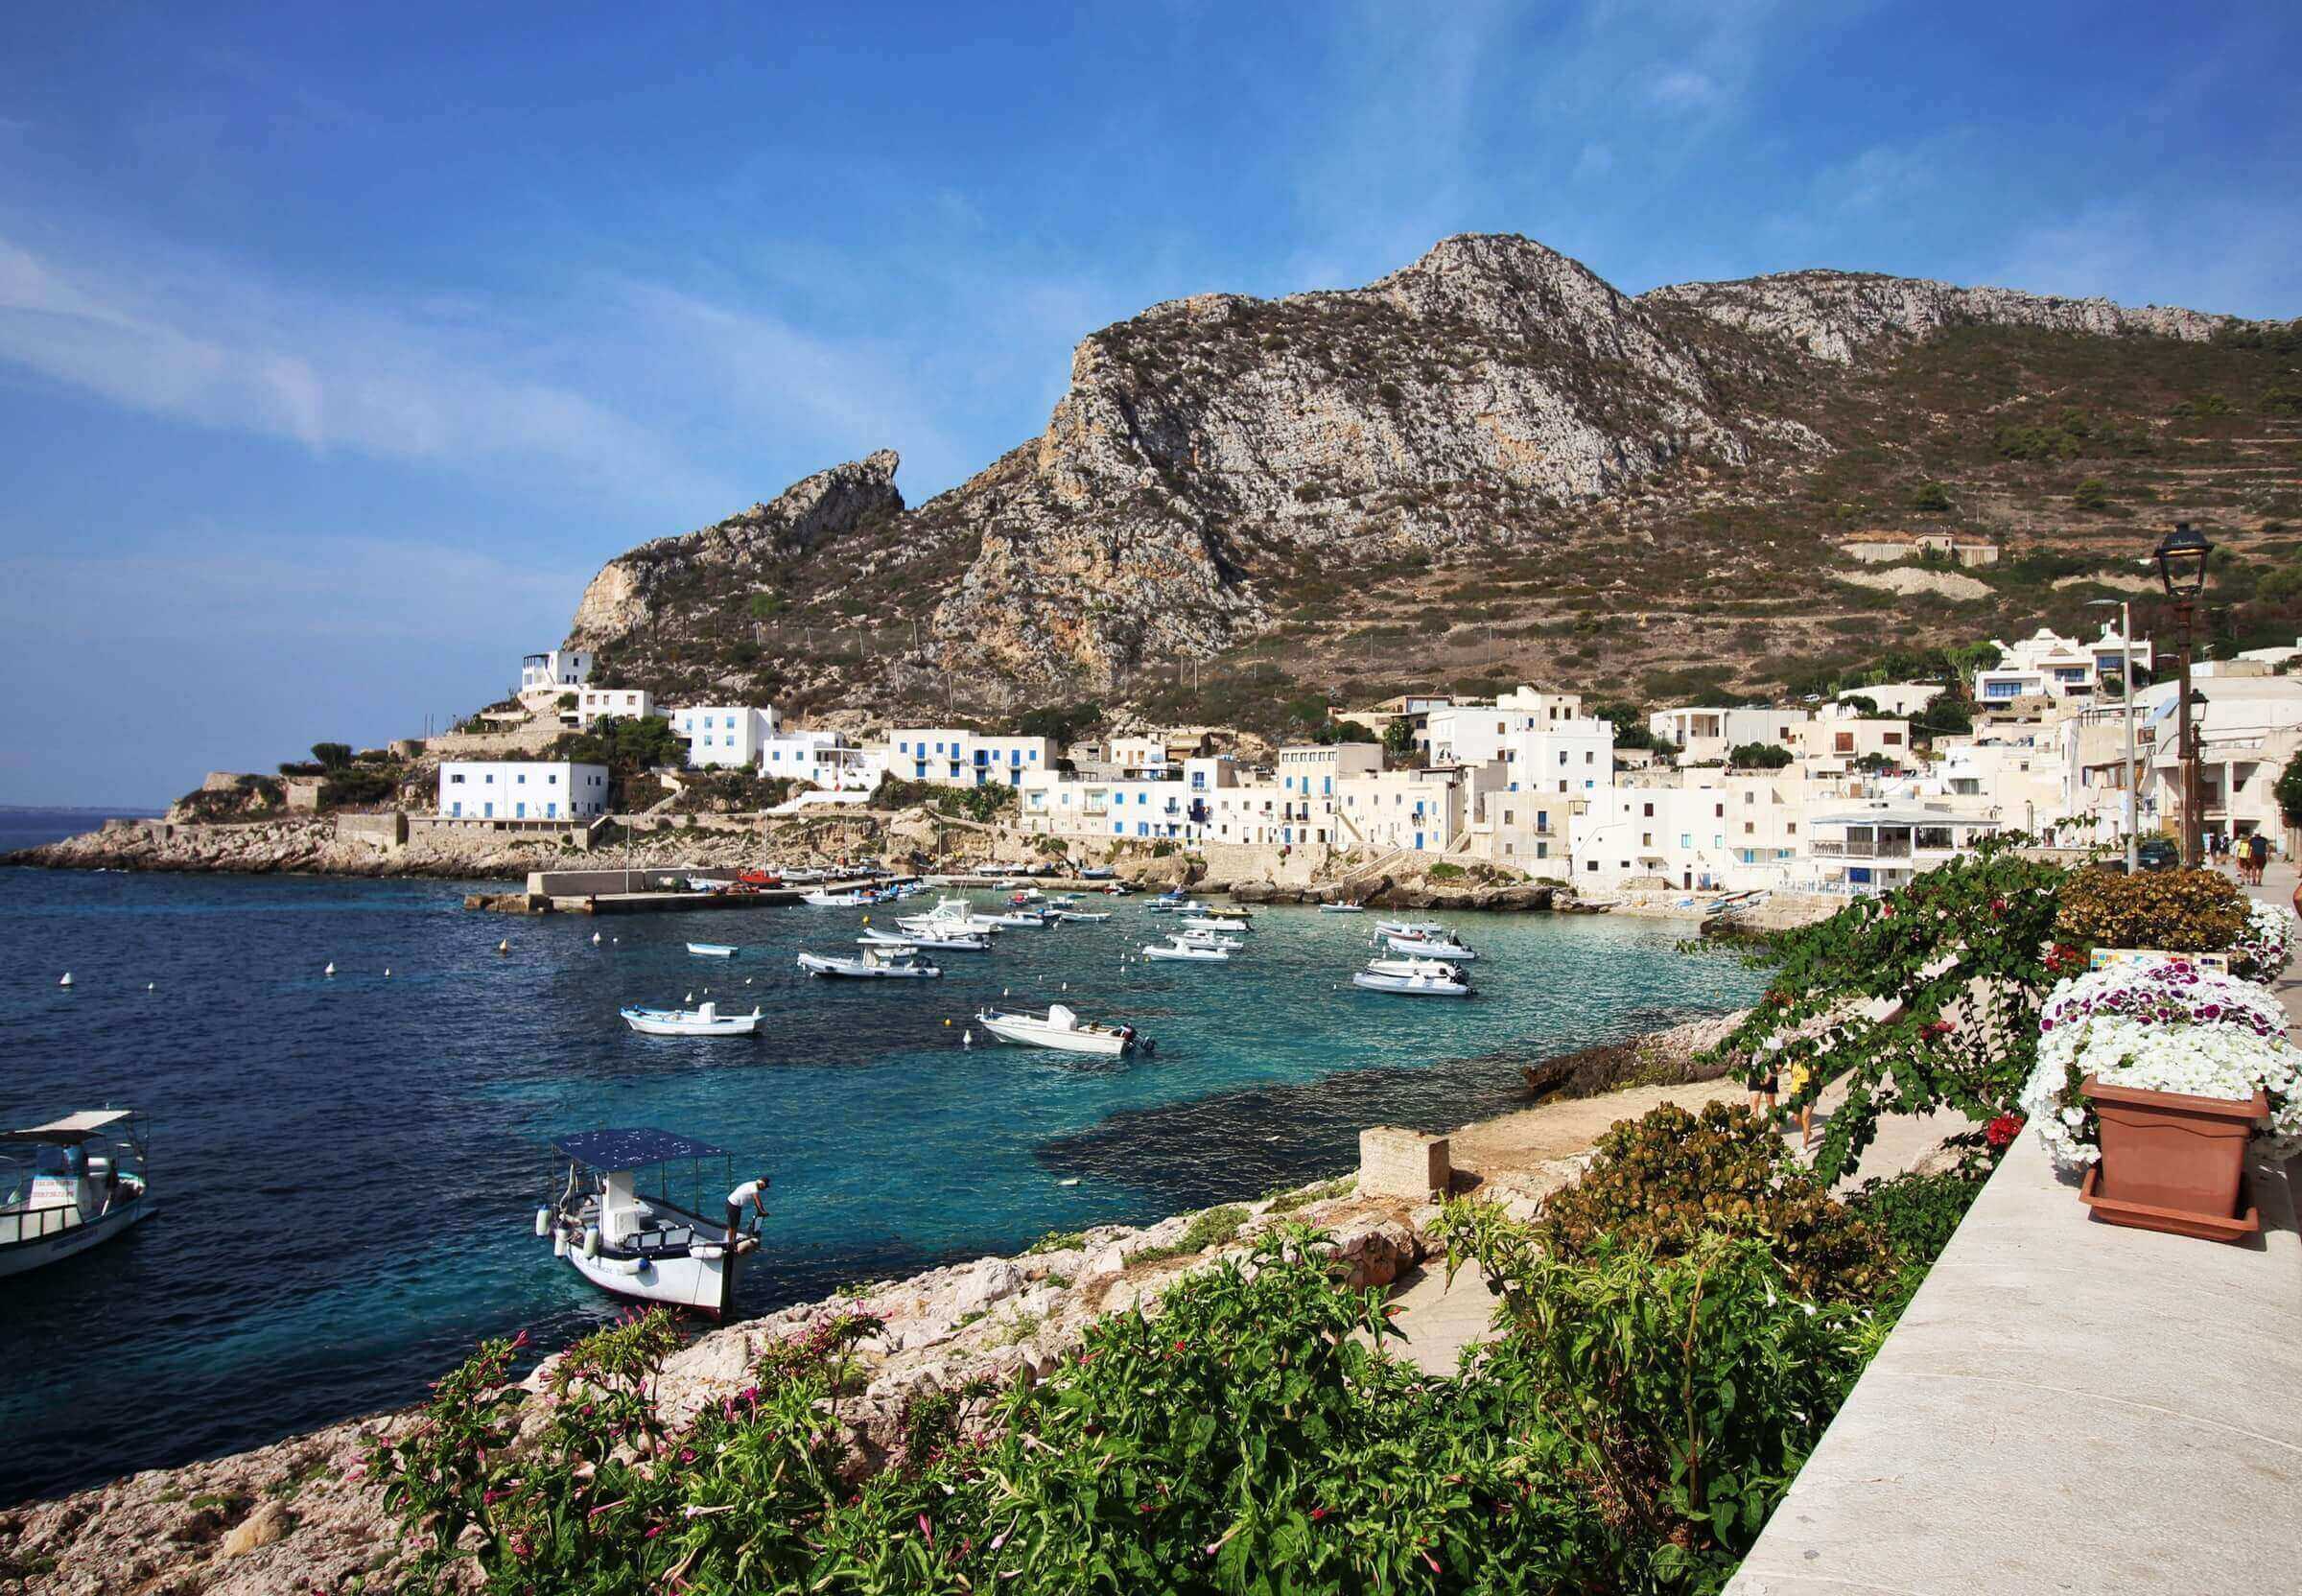 Western Sicily minor islands